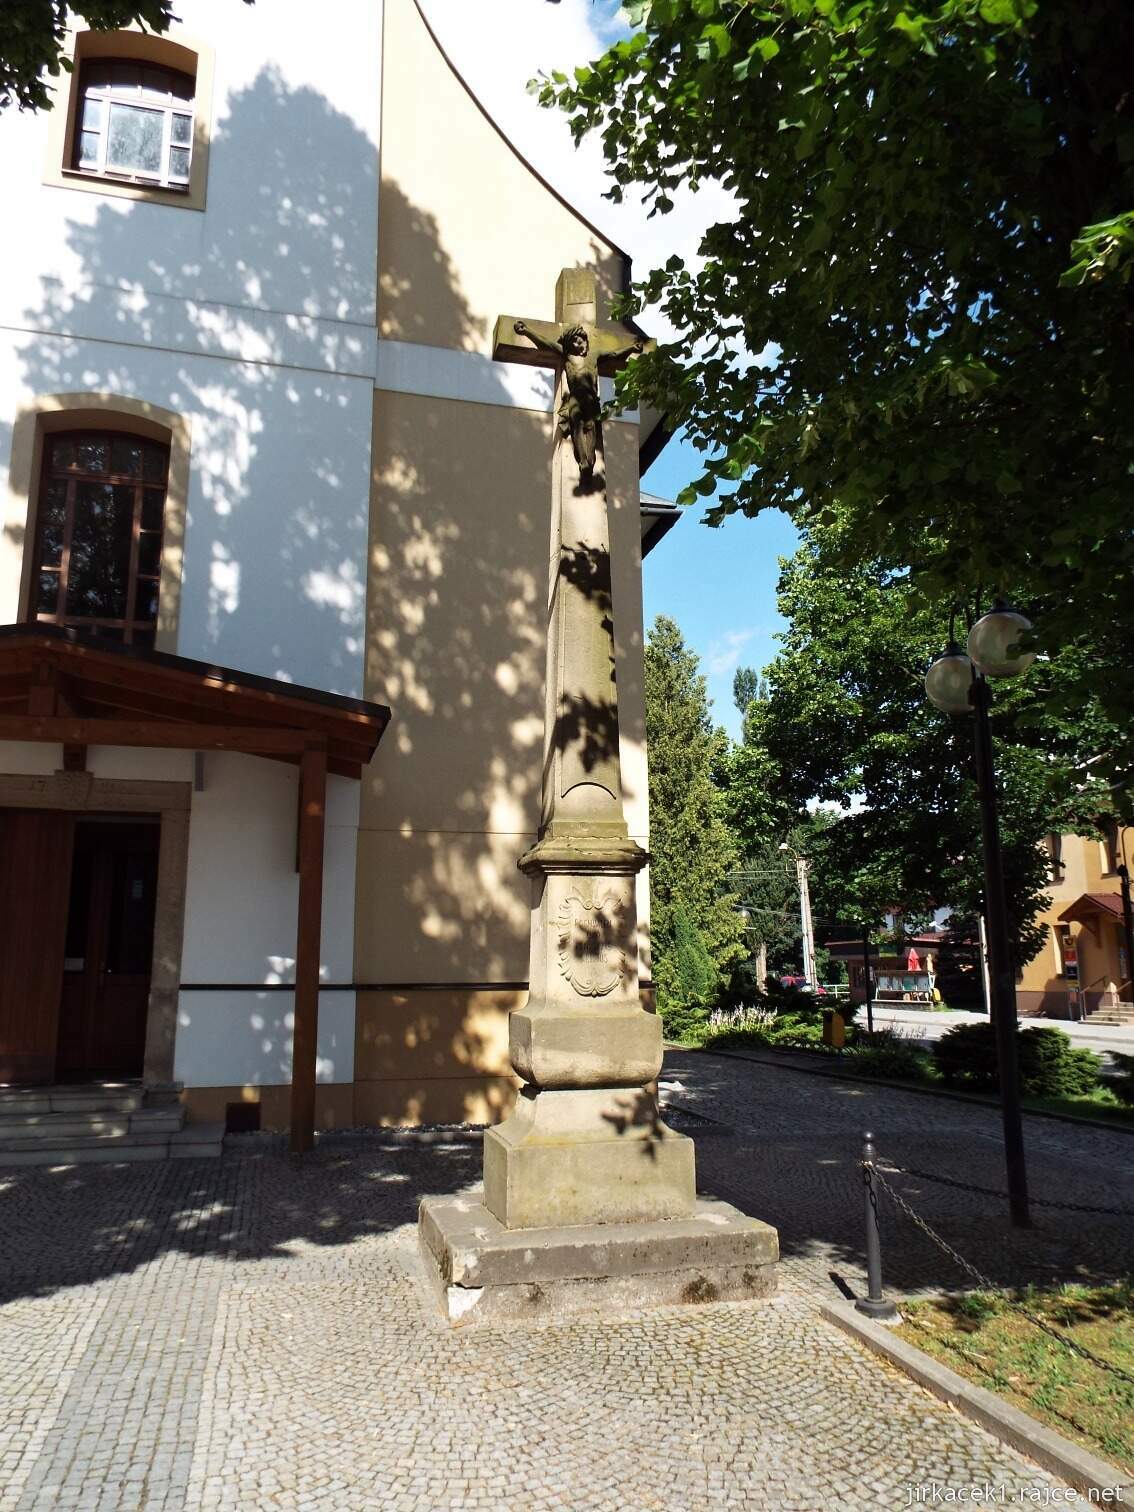 017 - Nový Hrozenkov - kostel sv. Jana Křtitele 04 - kříž s Kristem u vchodu